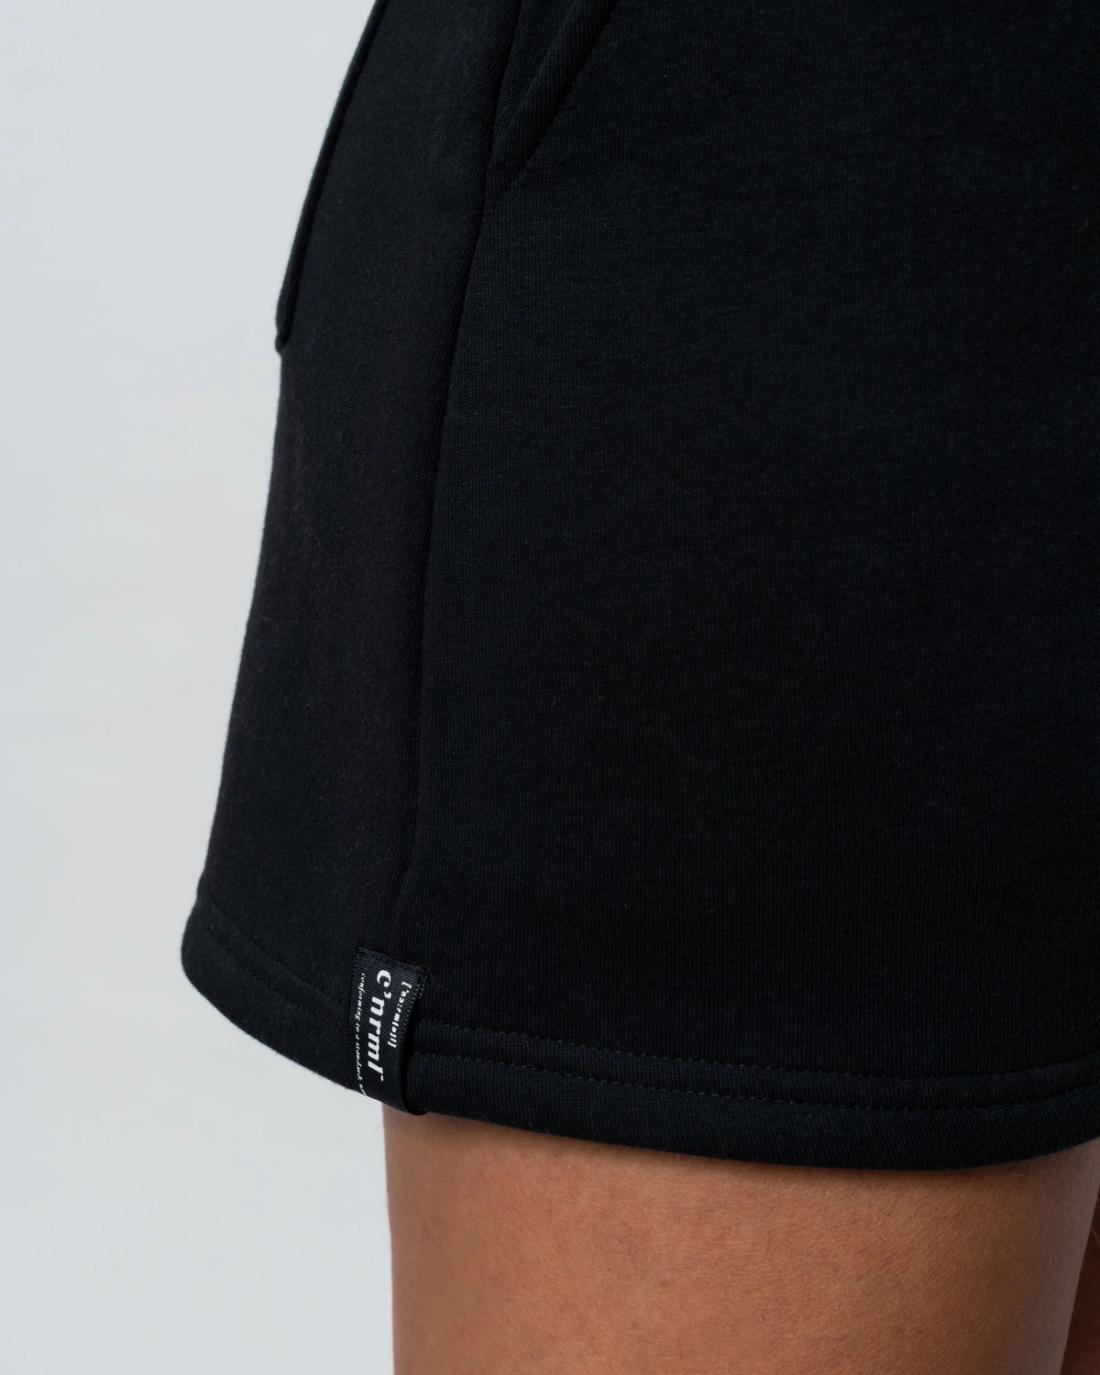 The Basic Shorts 2.0